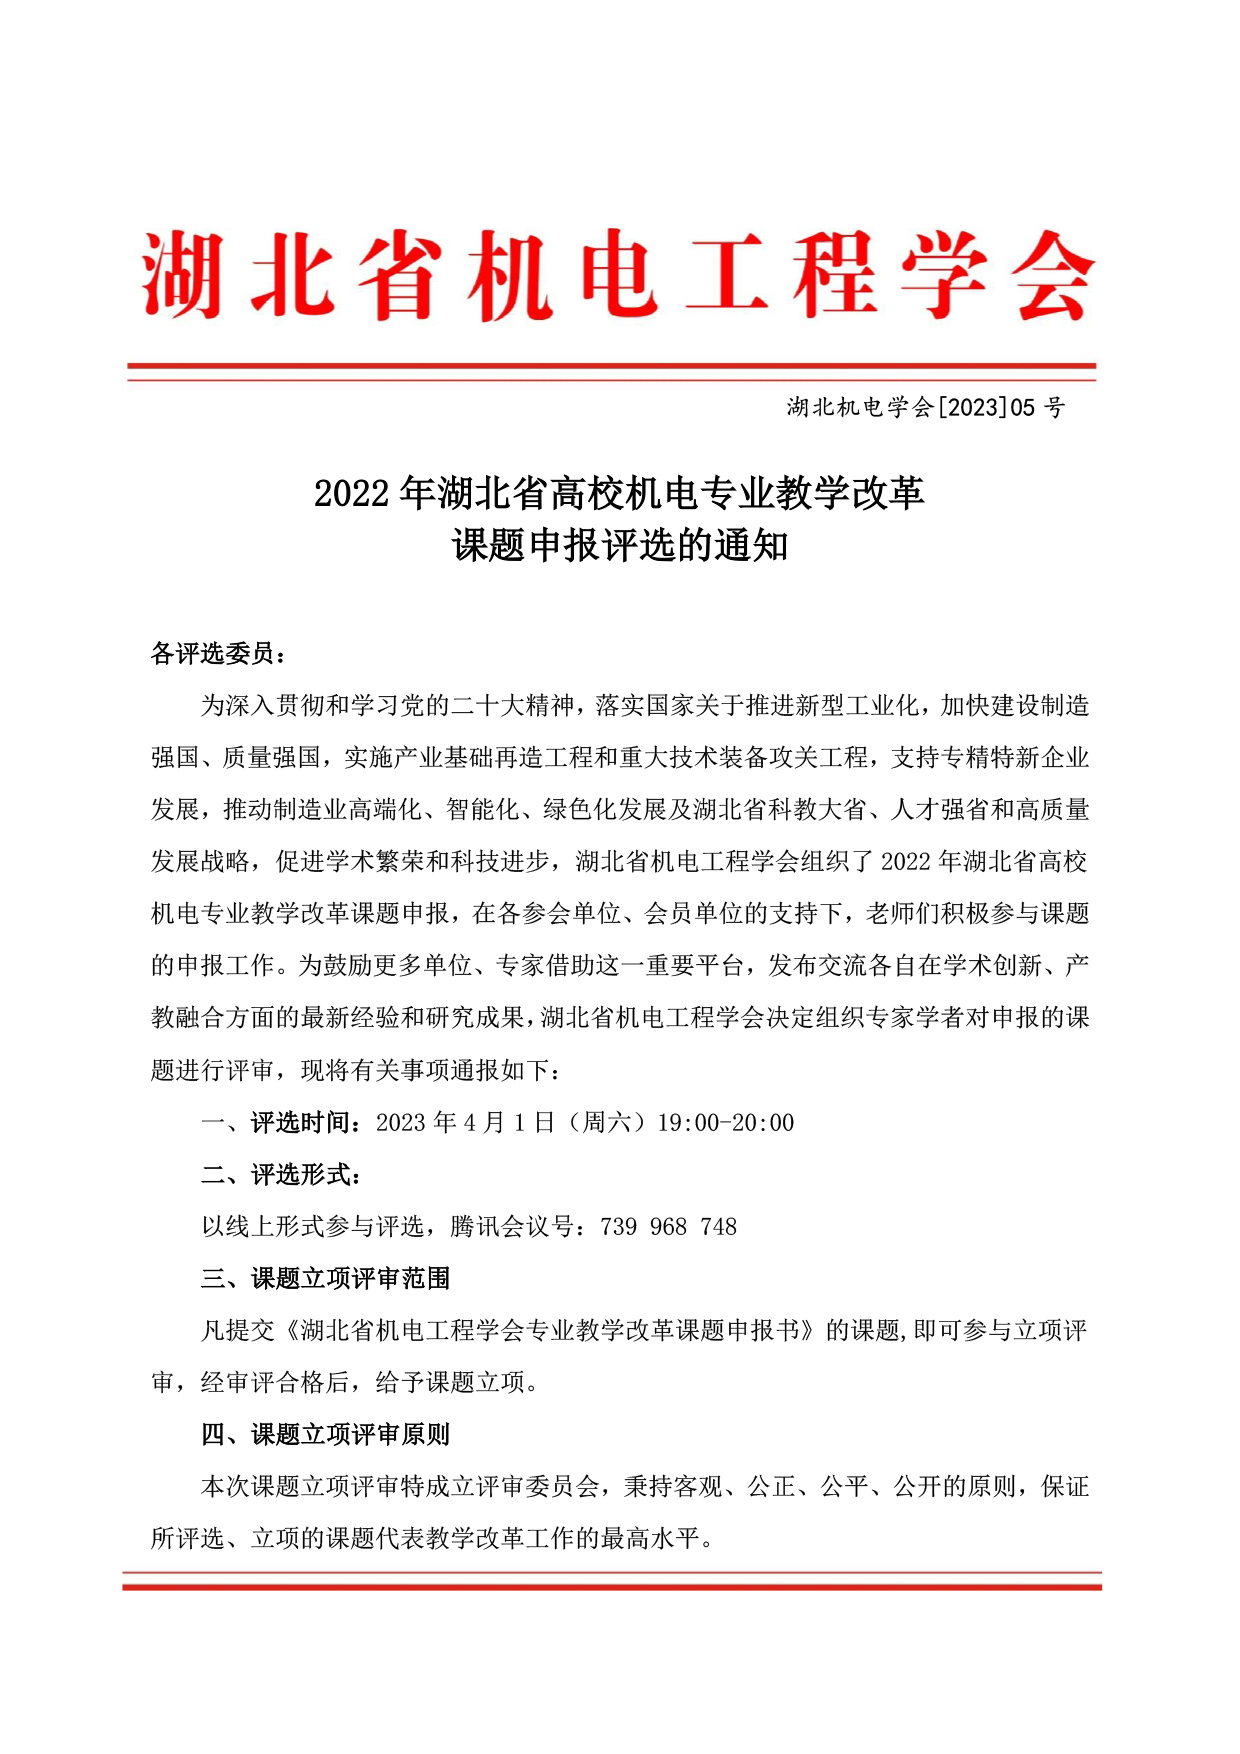 2022年湖北省高校机电专业教学改革课题申报评选的通知